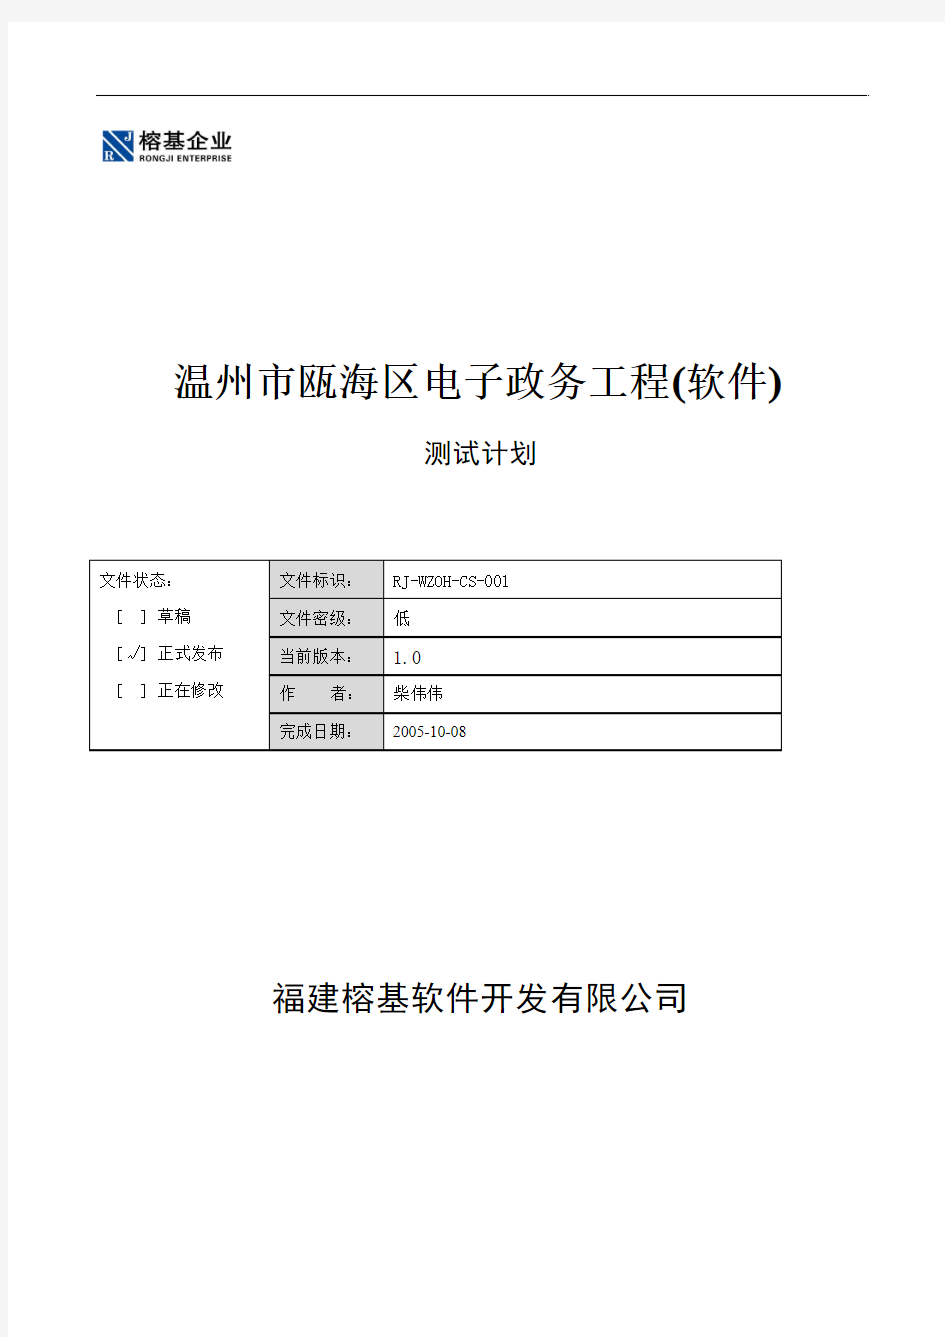 温州市瓯海区电子政务工程(软件)__测试文档V1.0